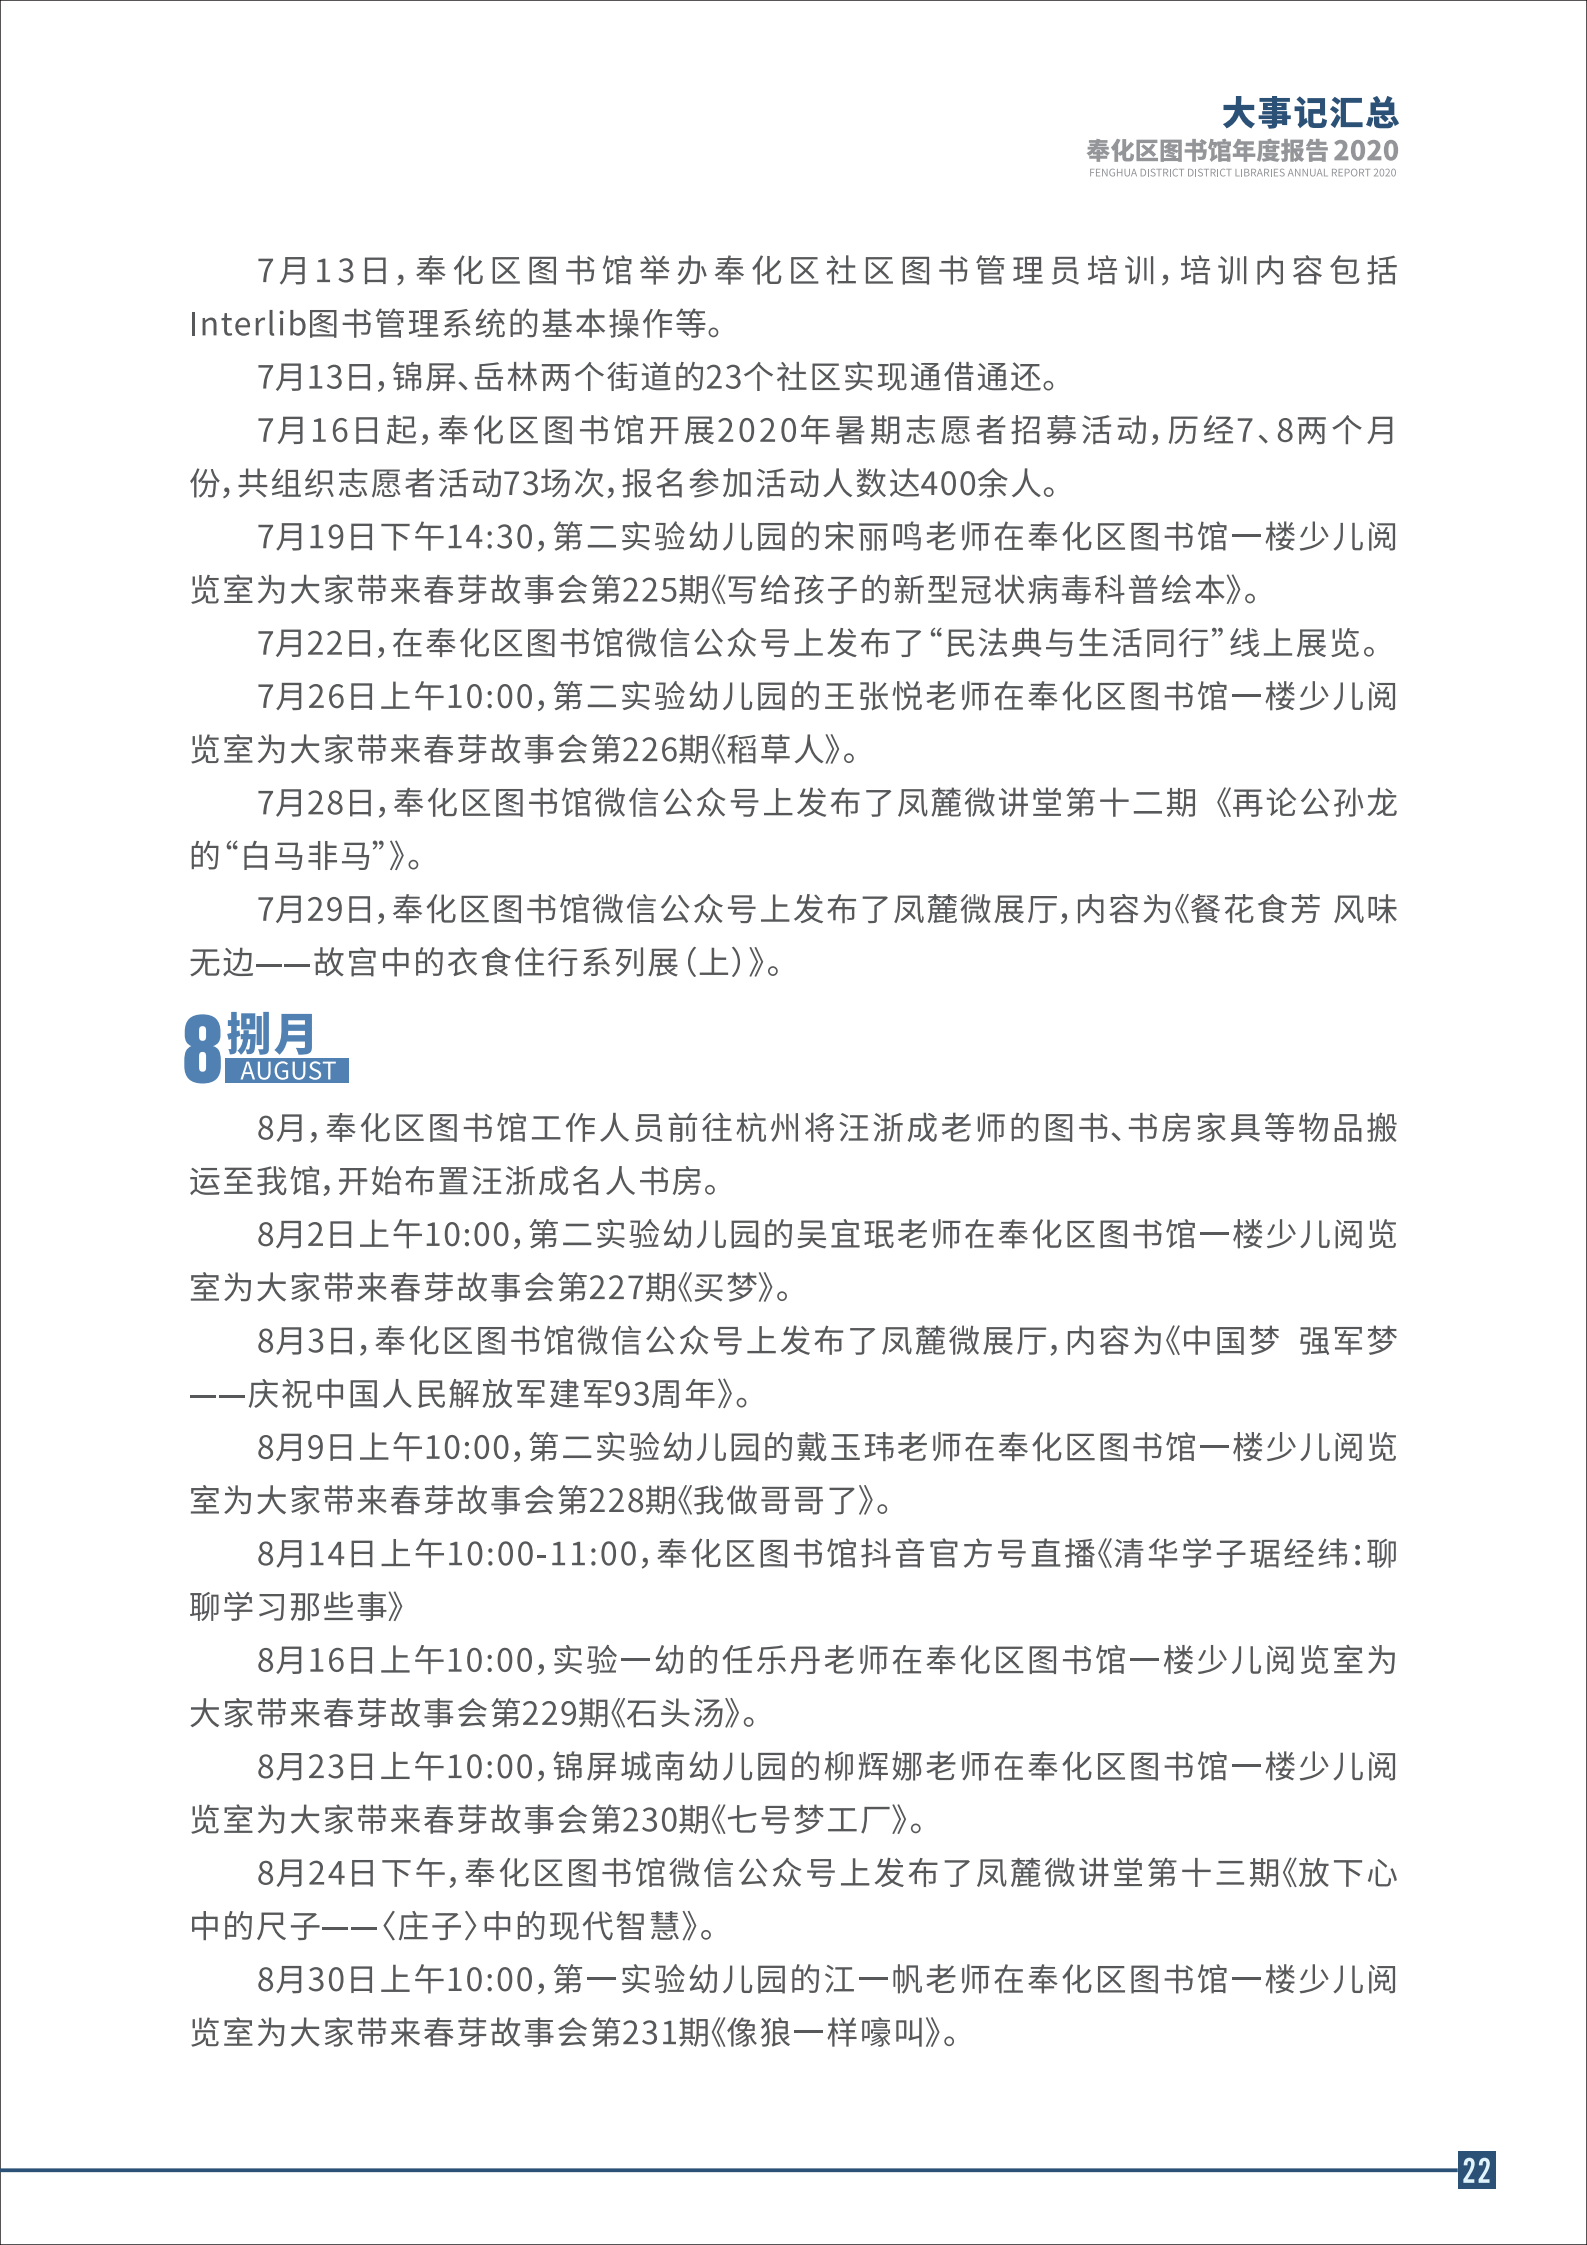 宁波市奉化区图书馆2020年年度报告 终稿_22.png